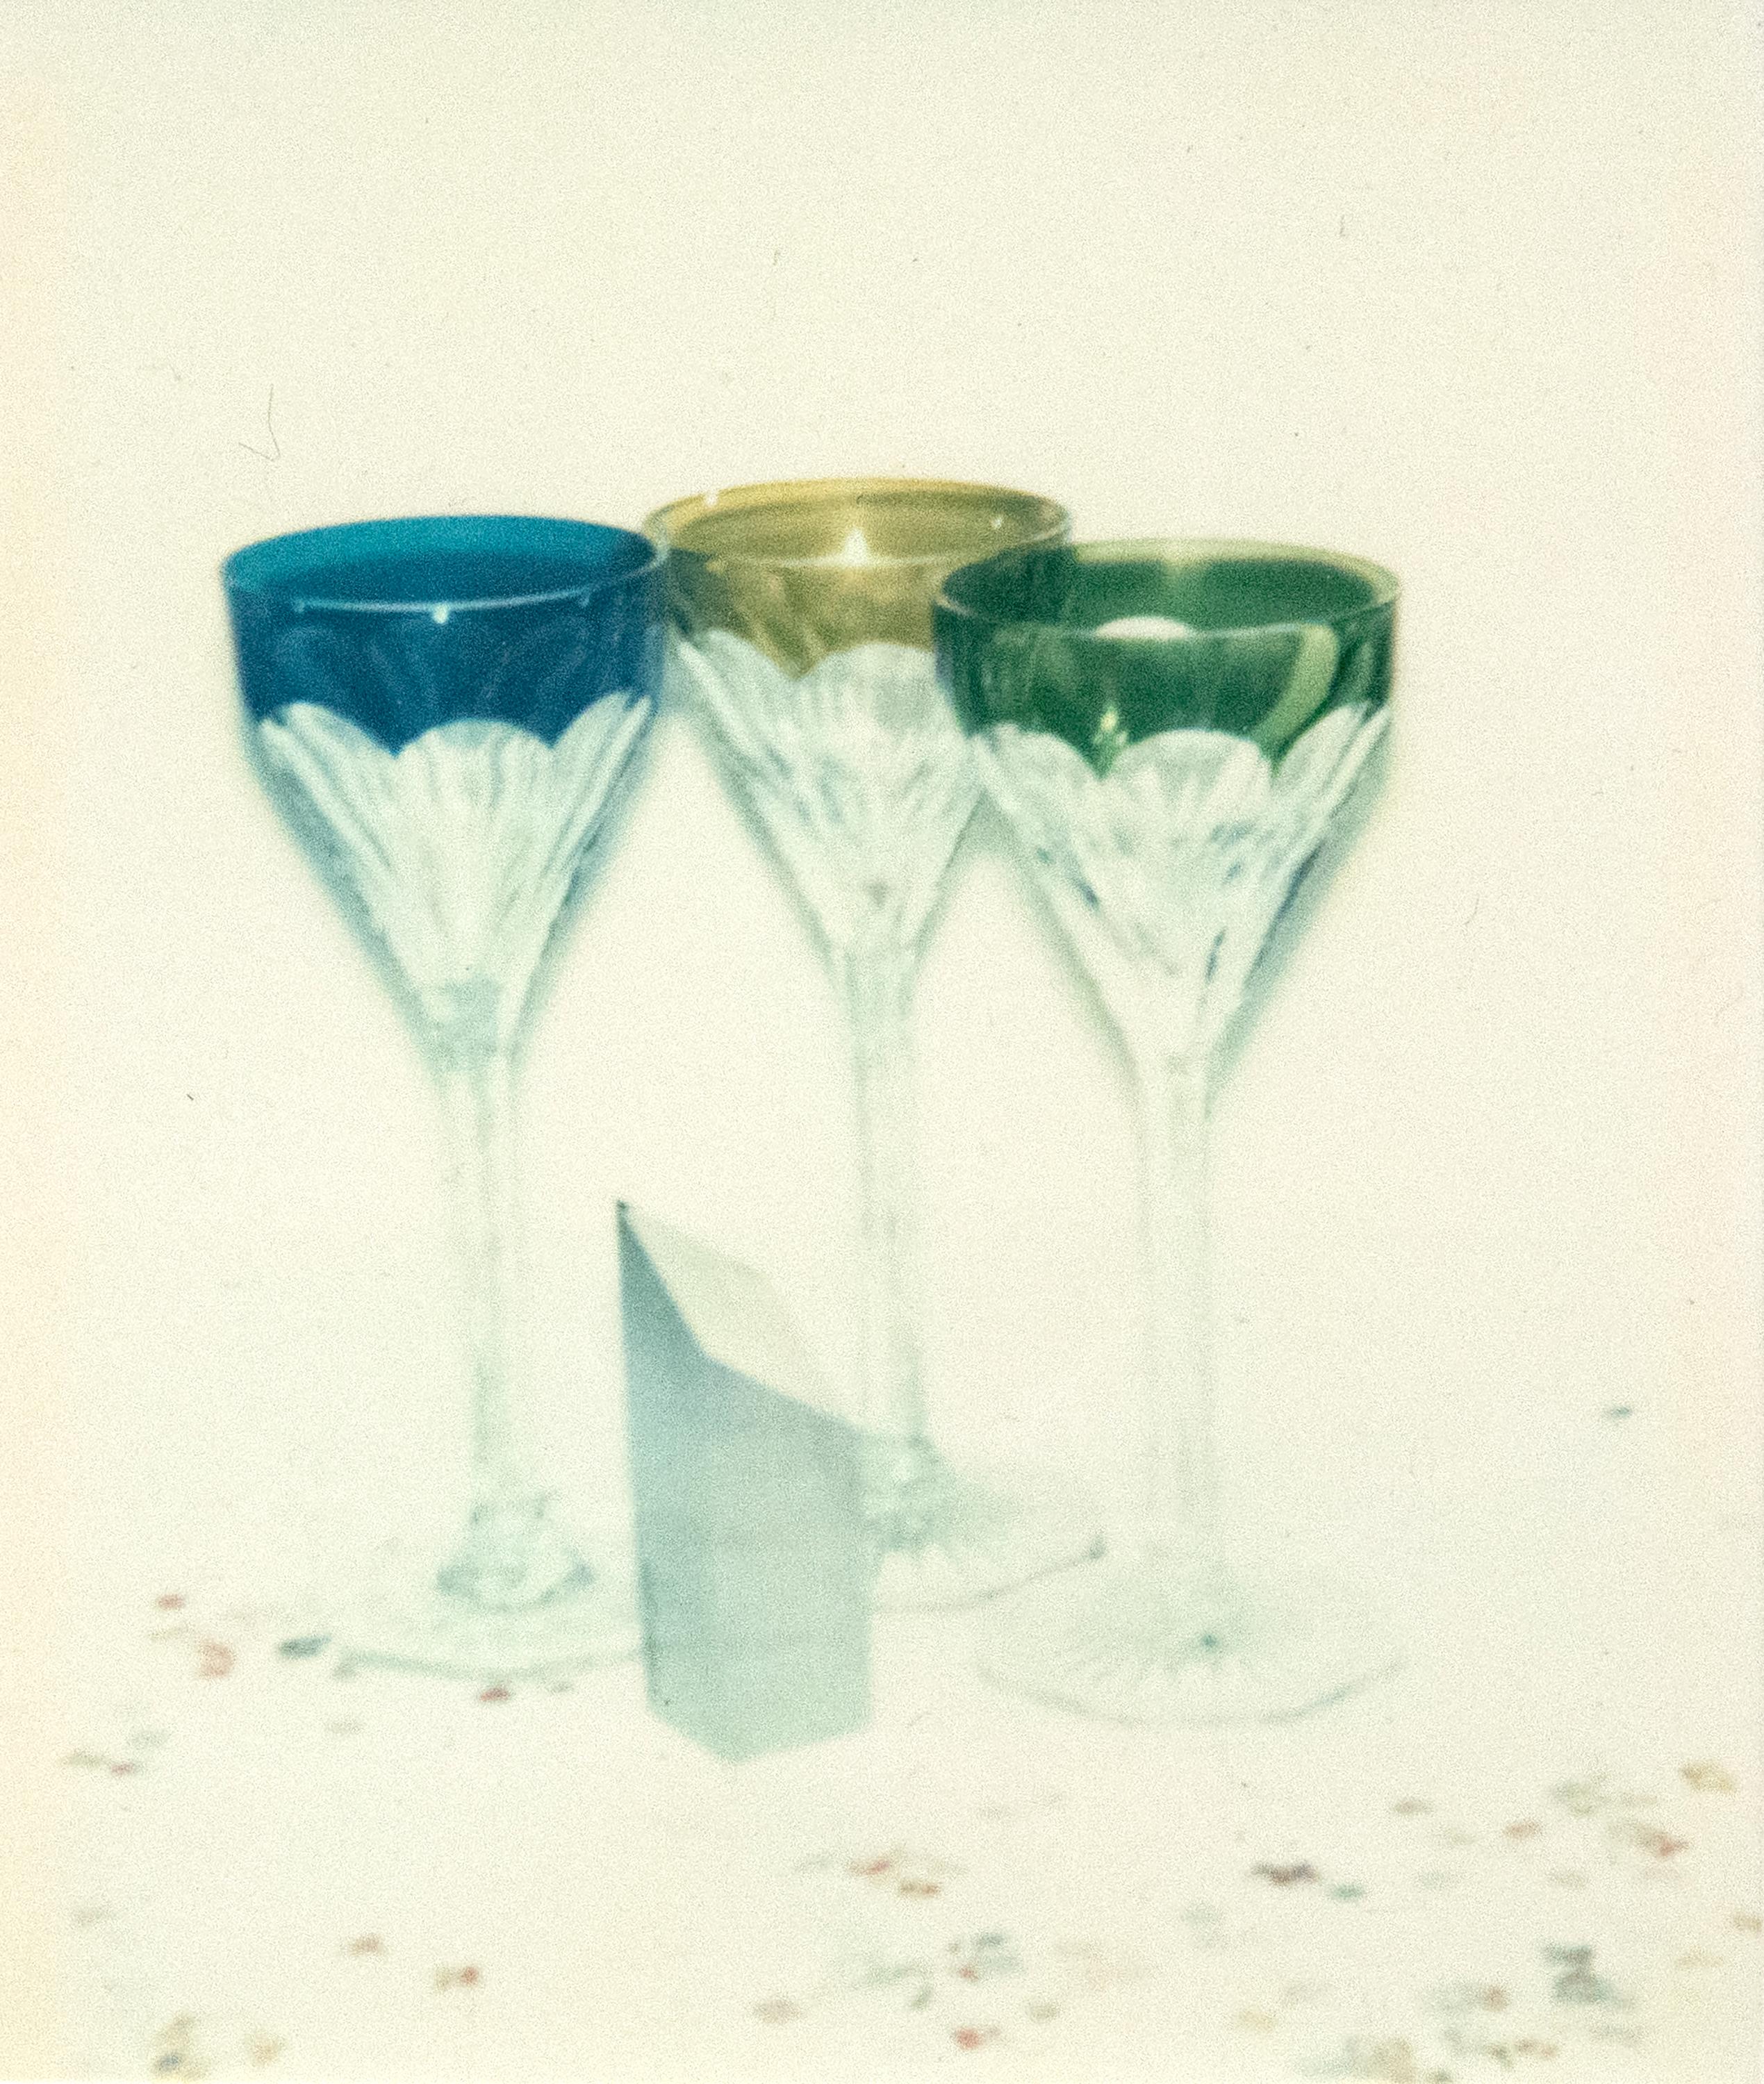 Committee 2000 Champagnergläser (Pop-Art), Photograph, von Andy Warhol